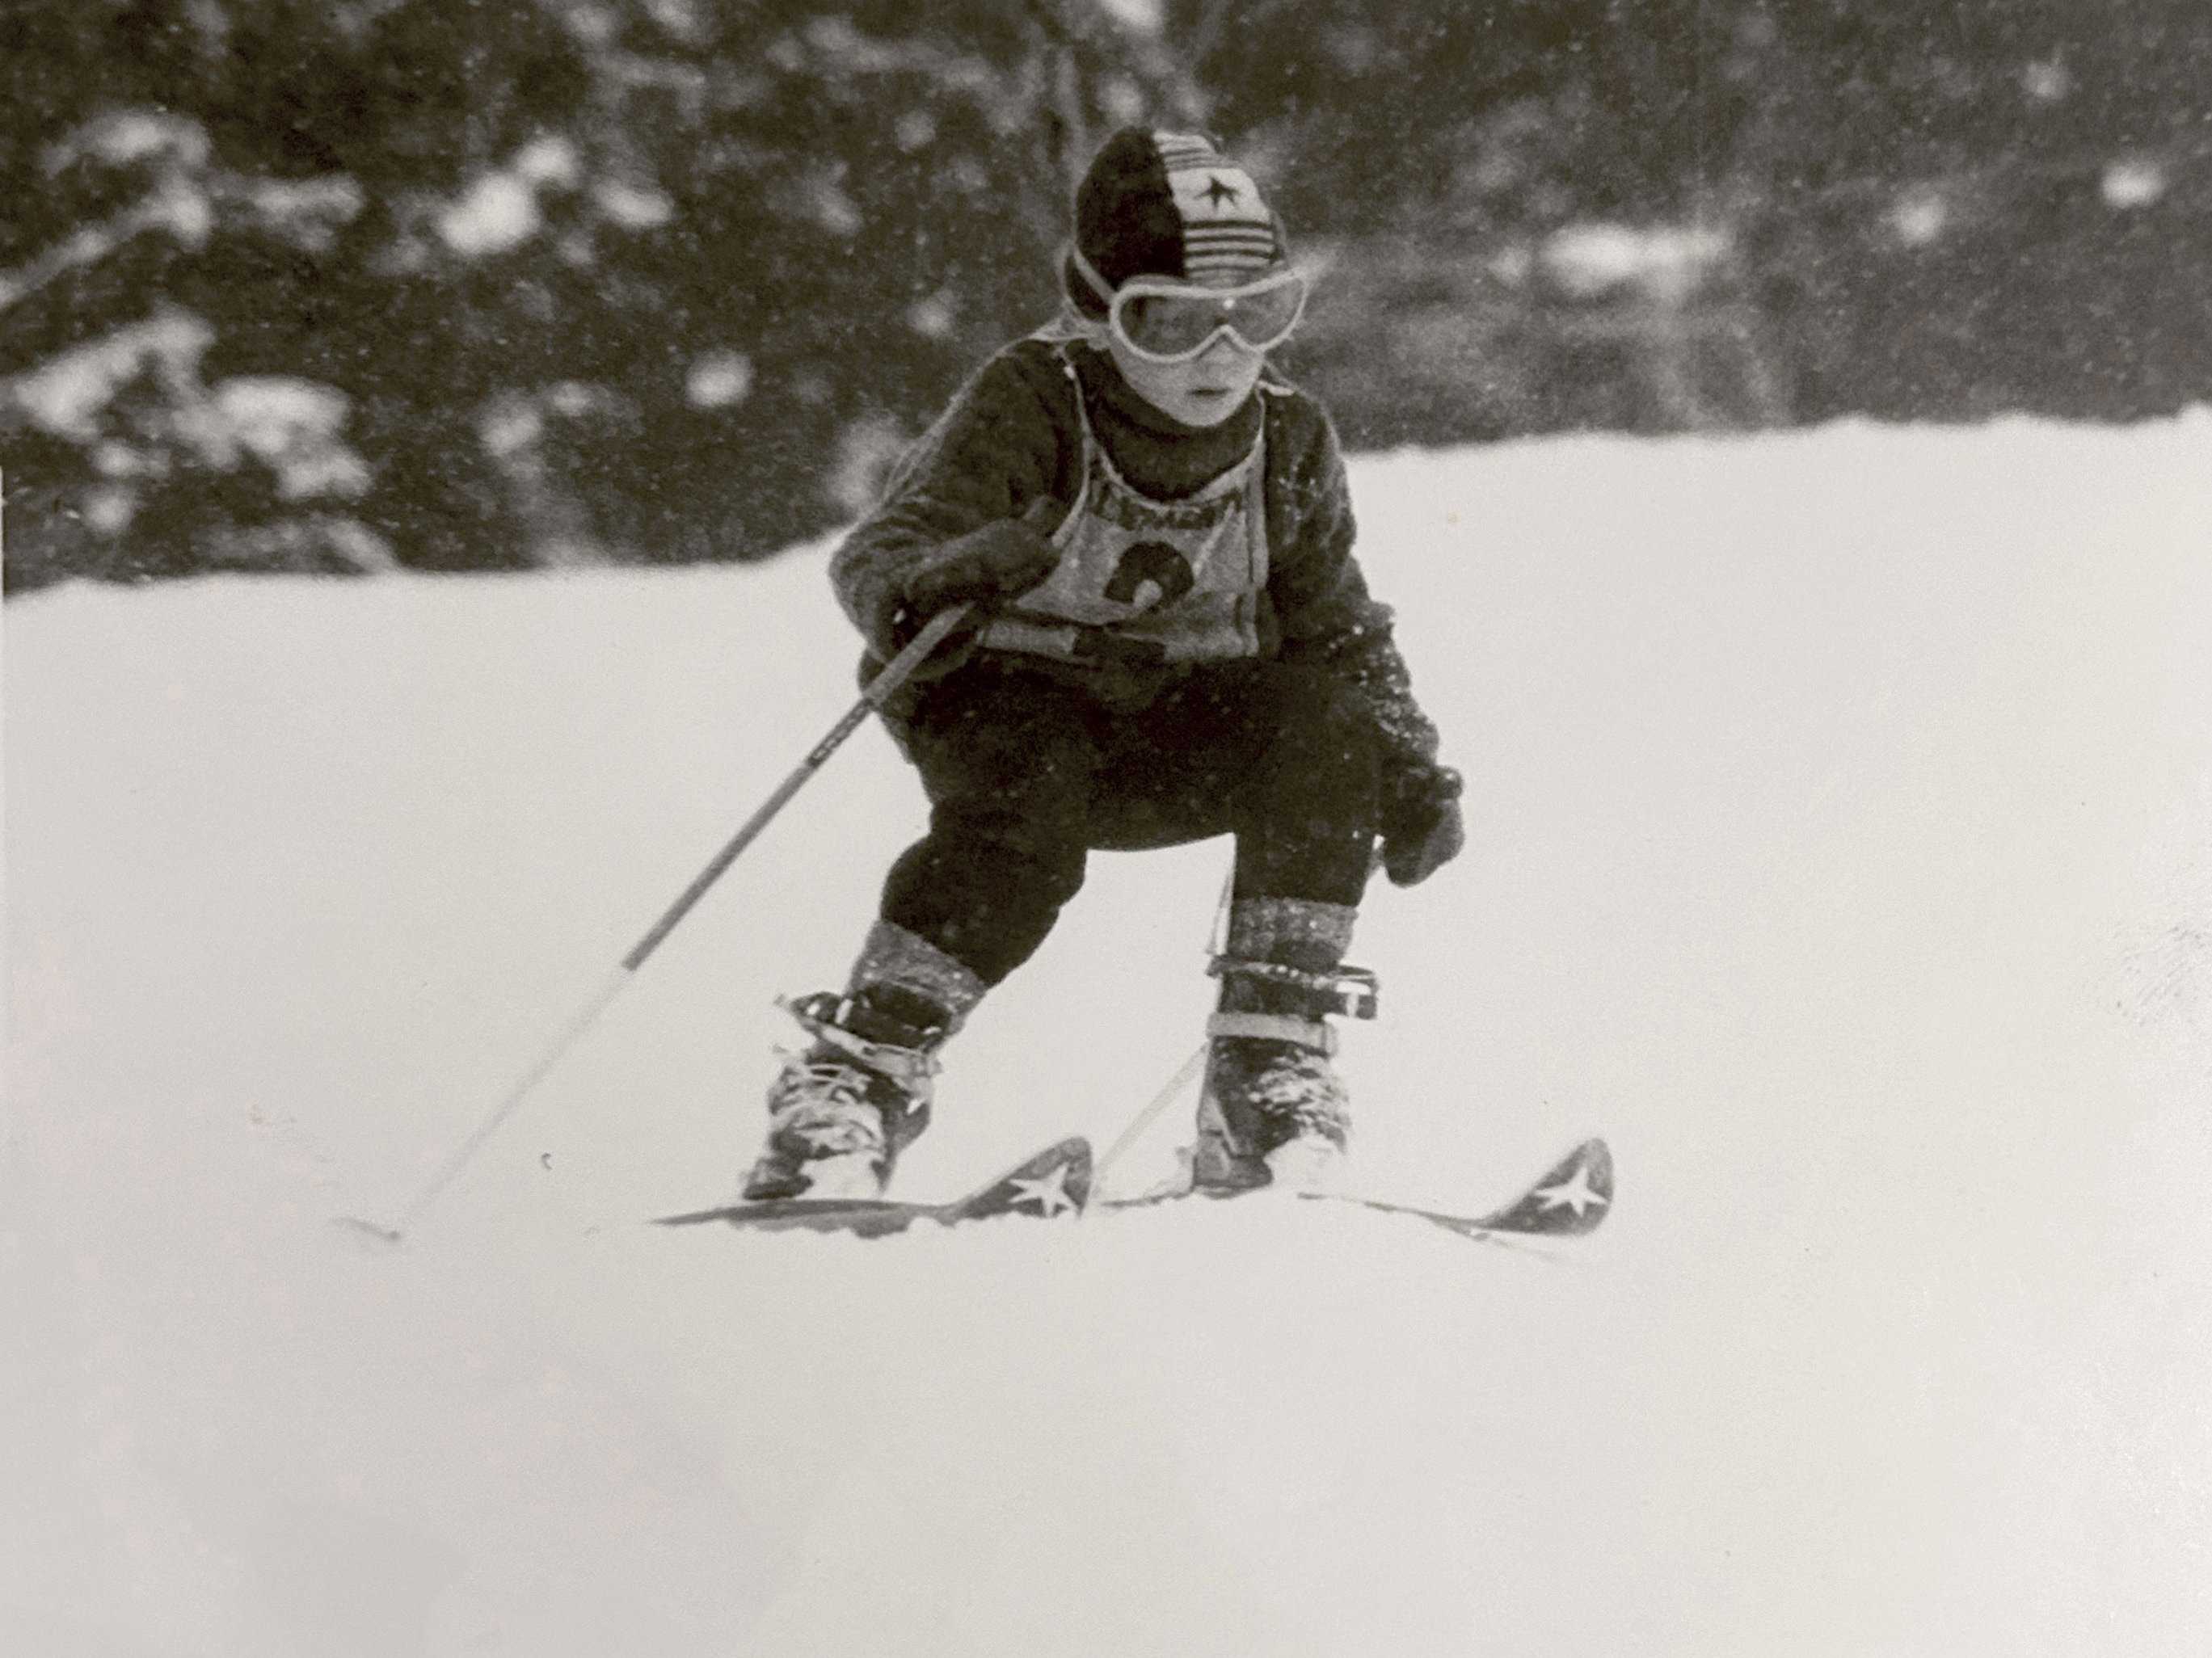 Wenzel Fuchs as a boy, skiing.